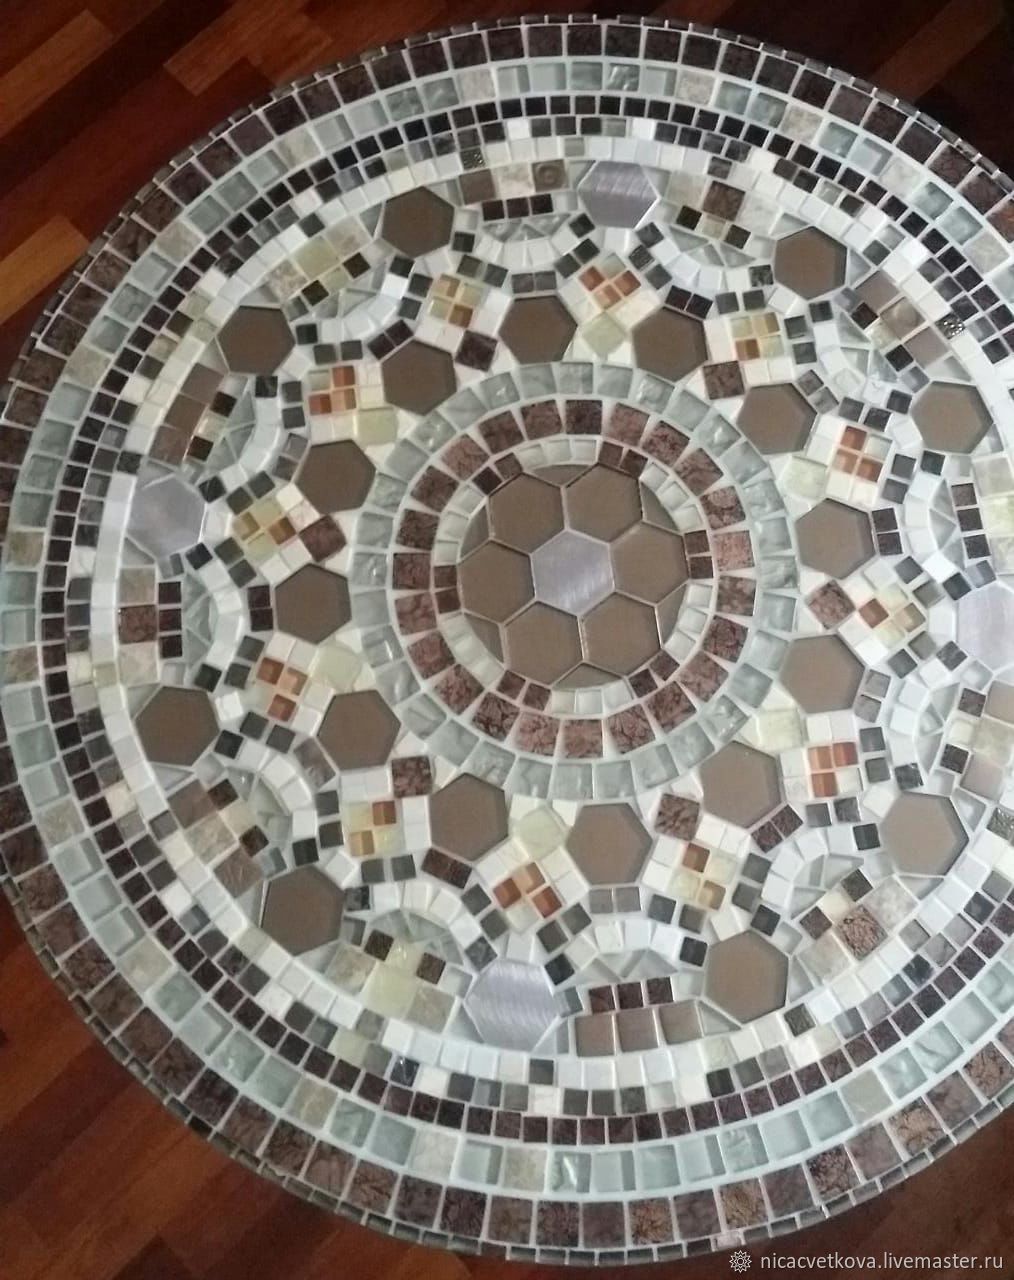 Стол квадратный декорированный мозаикой коричневый-бежевый